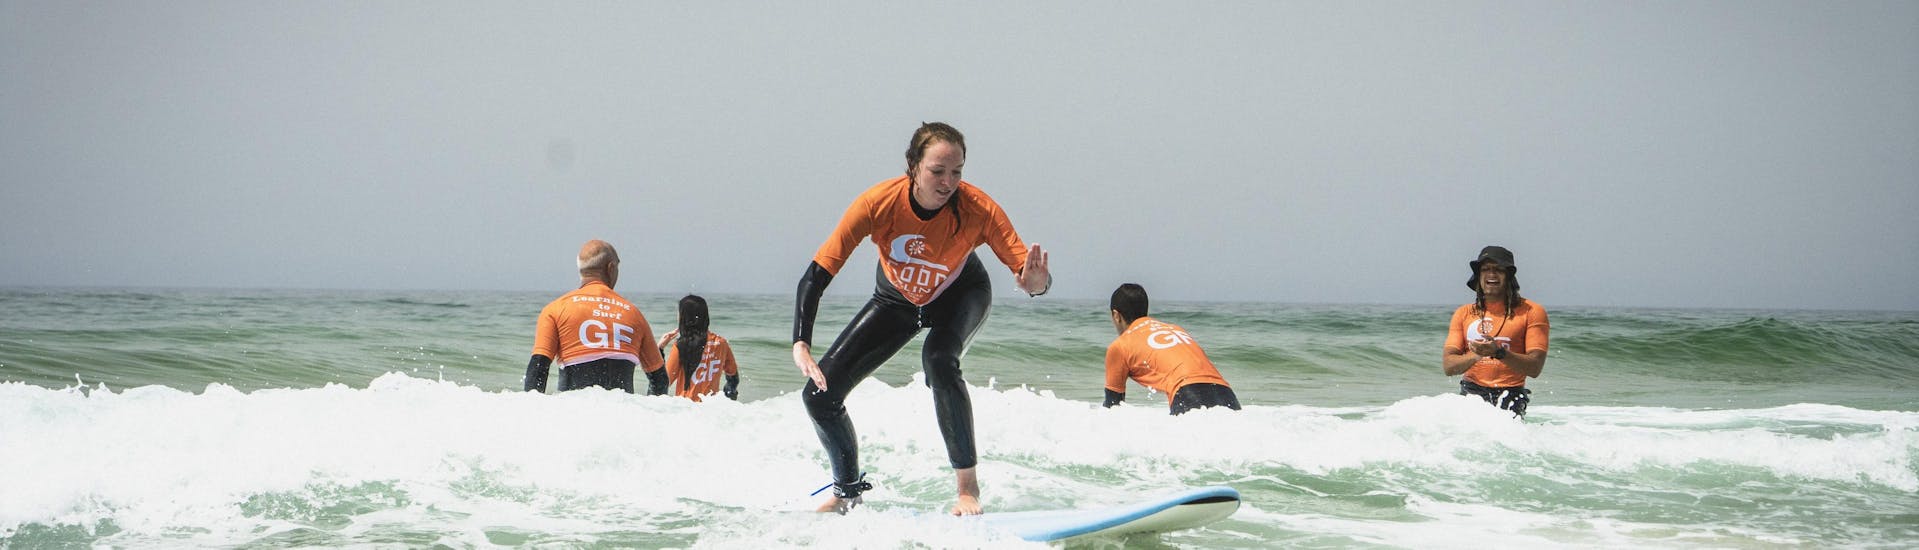 Een groep deelnemers op surfplanken tijdens surflessen (vanaf 6 j.) op Praia Castelejo met Good Feeling Surf School Algarve.